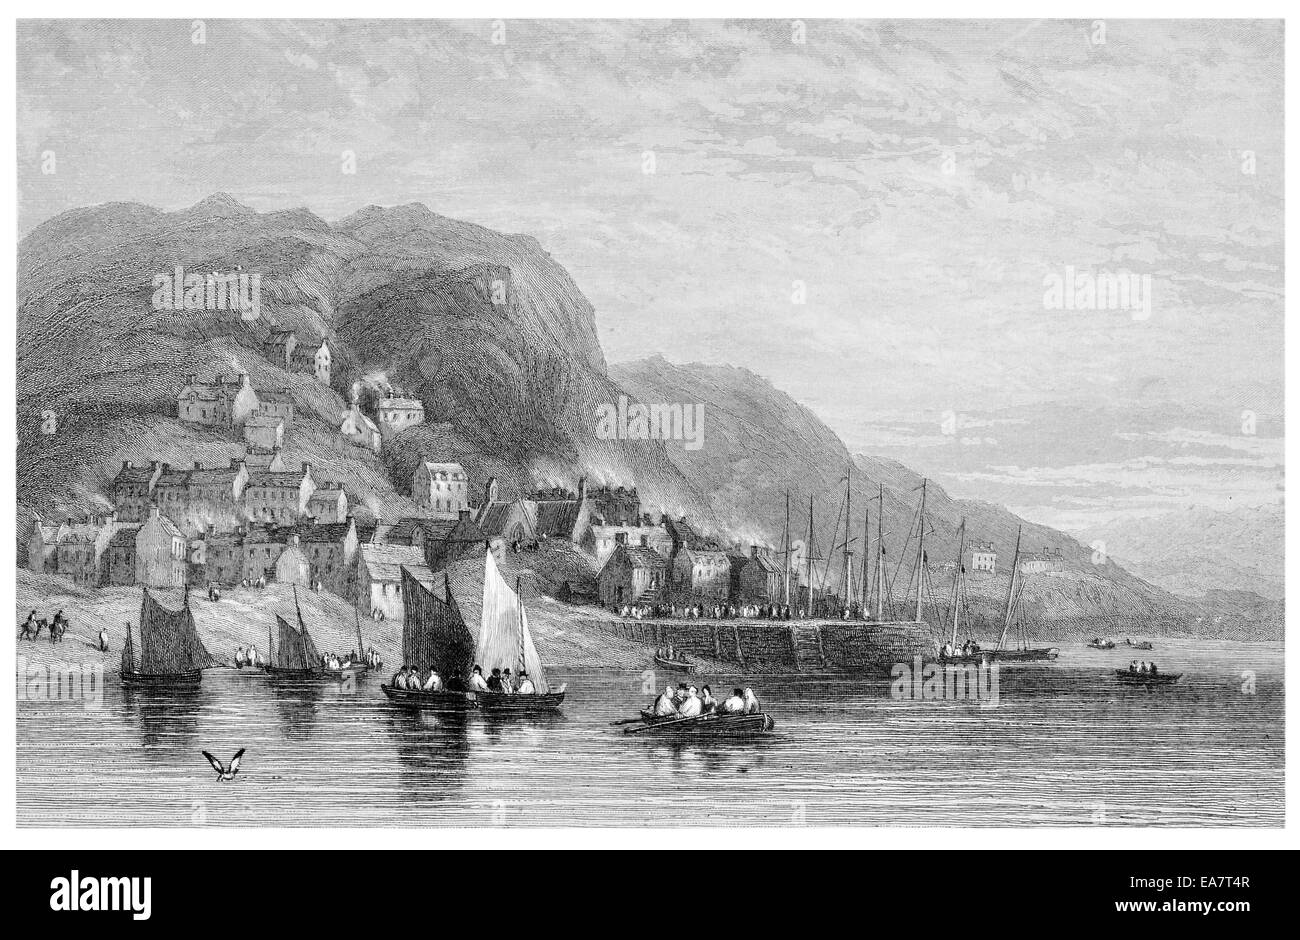 Barmouth Abermaw Y Bermo county of Gwynedd, north-western Wales circa 1830 Stock Photo